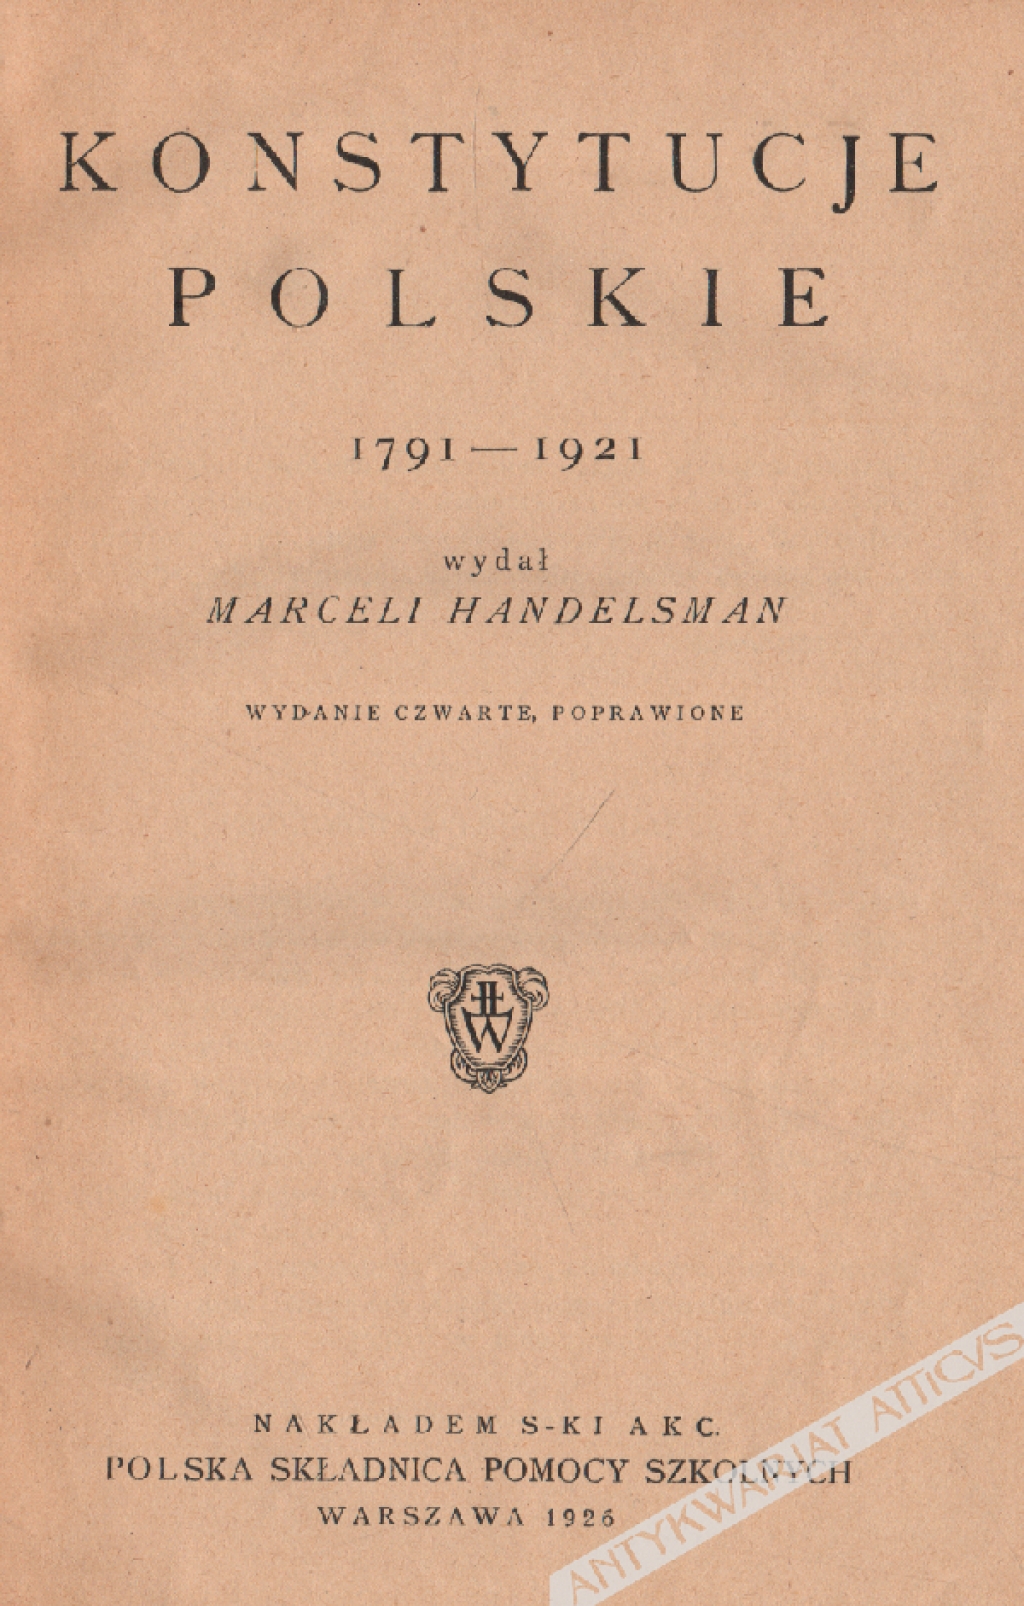 Konstytucje polskie 1791-1921